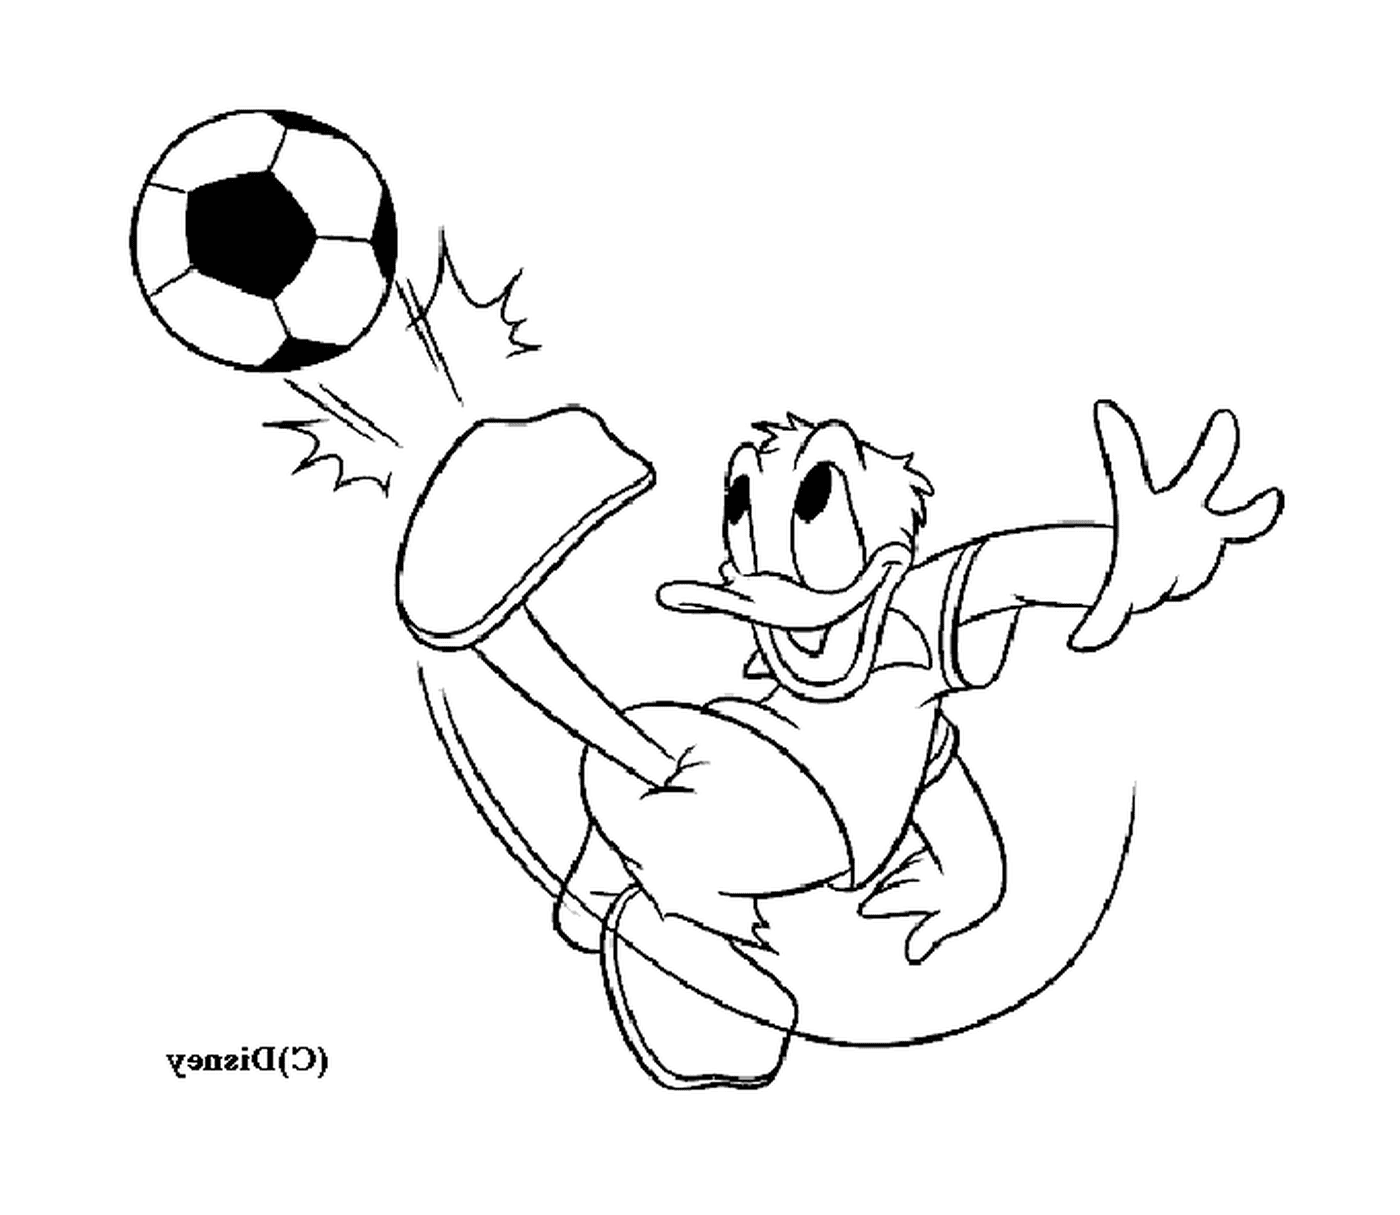  Дональд с энтузиазмом играет в футбол 